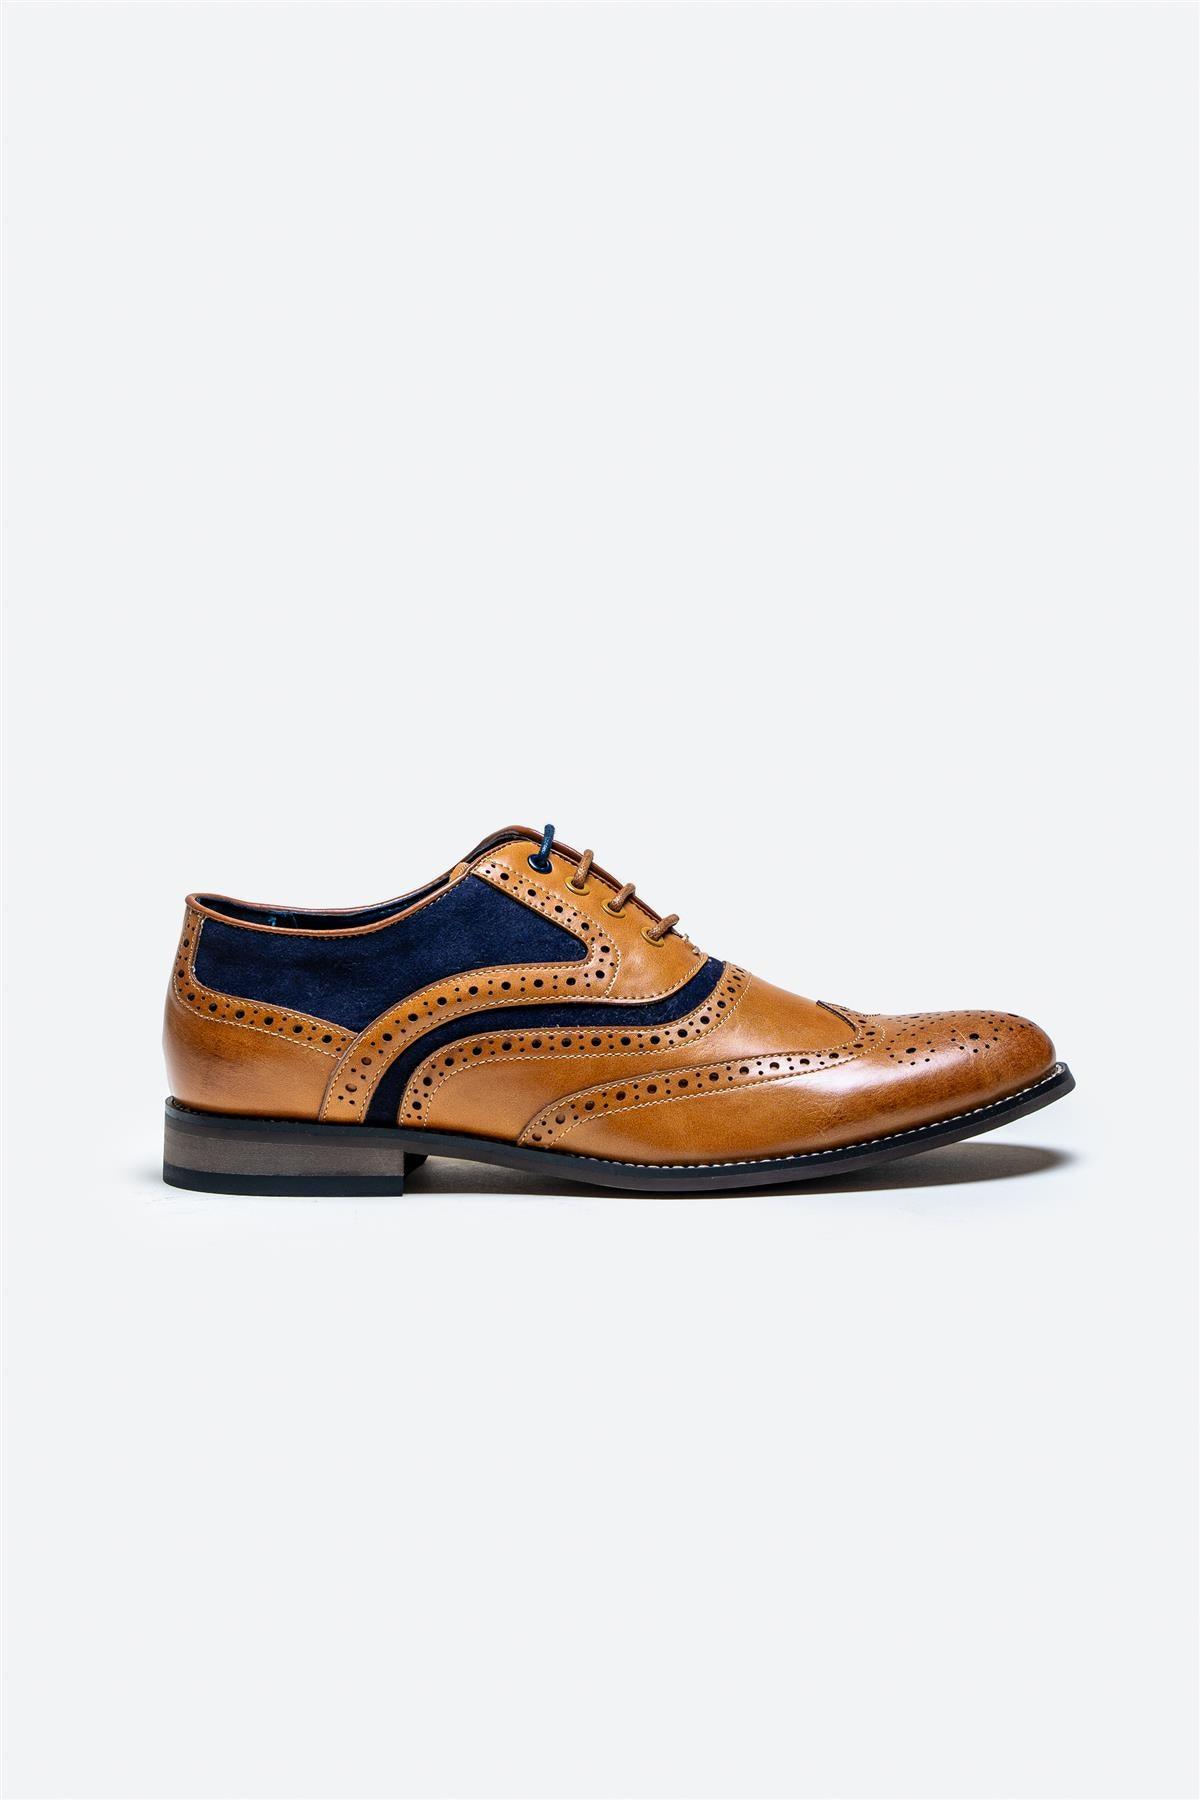 Russel tan/navy shoe side